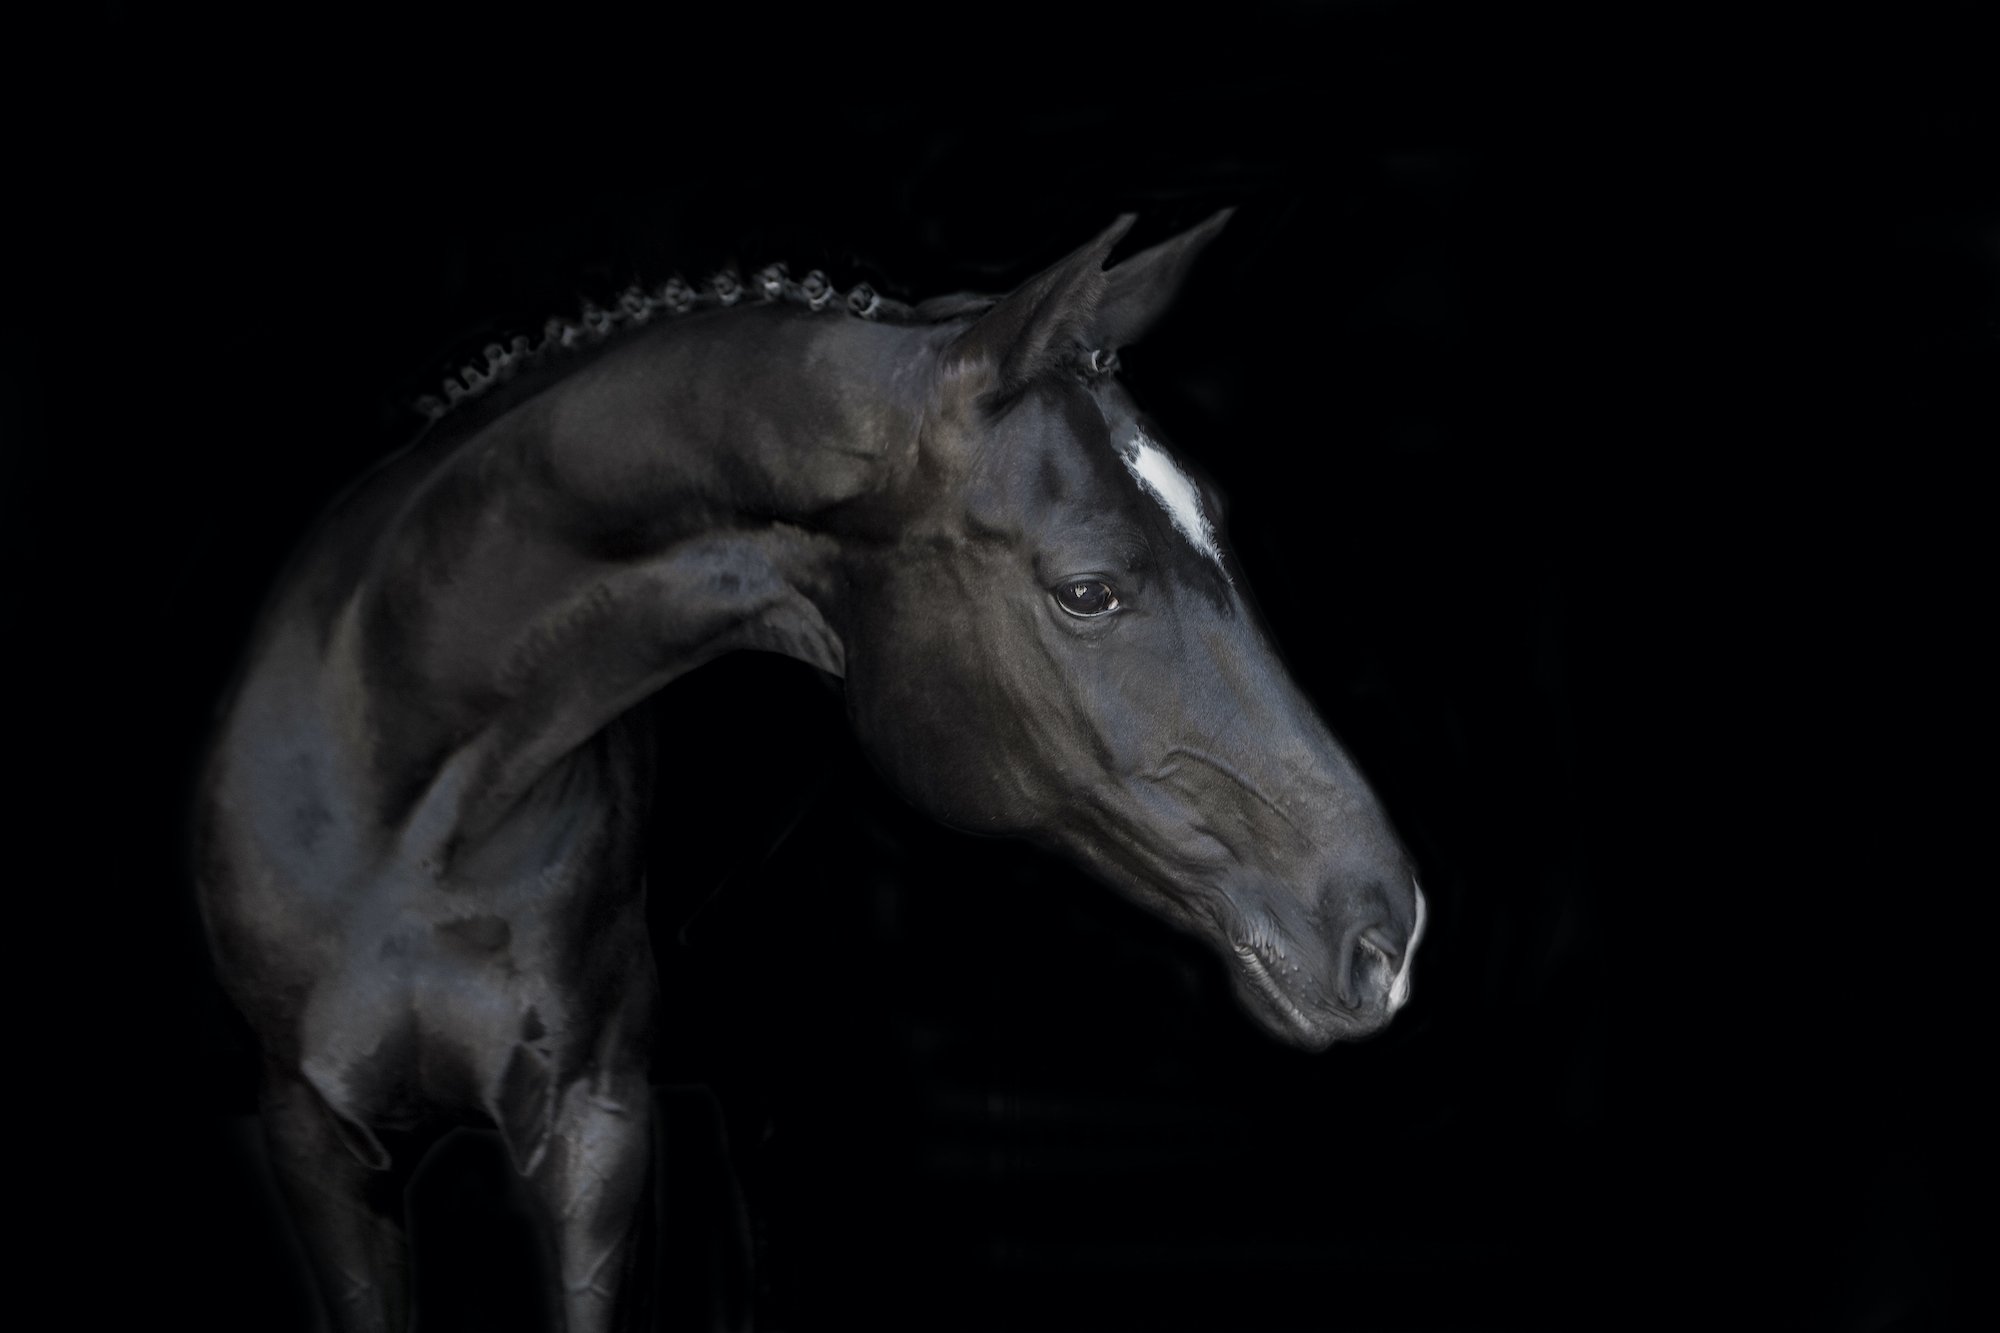 Black Horse - Black Background Horse Photography Emma Lowe Photography